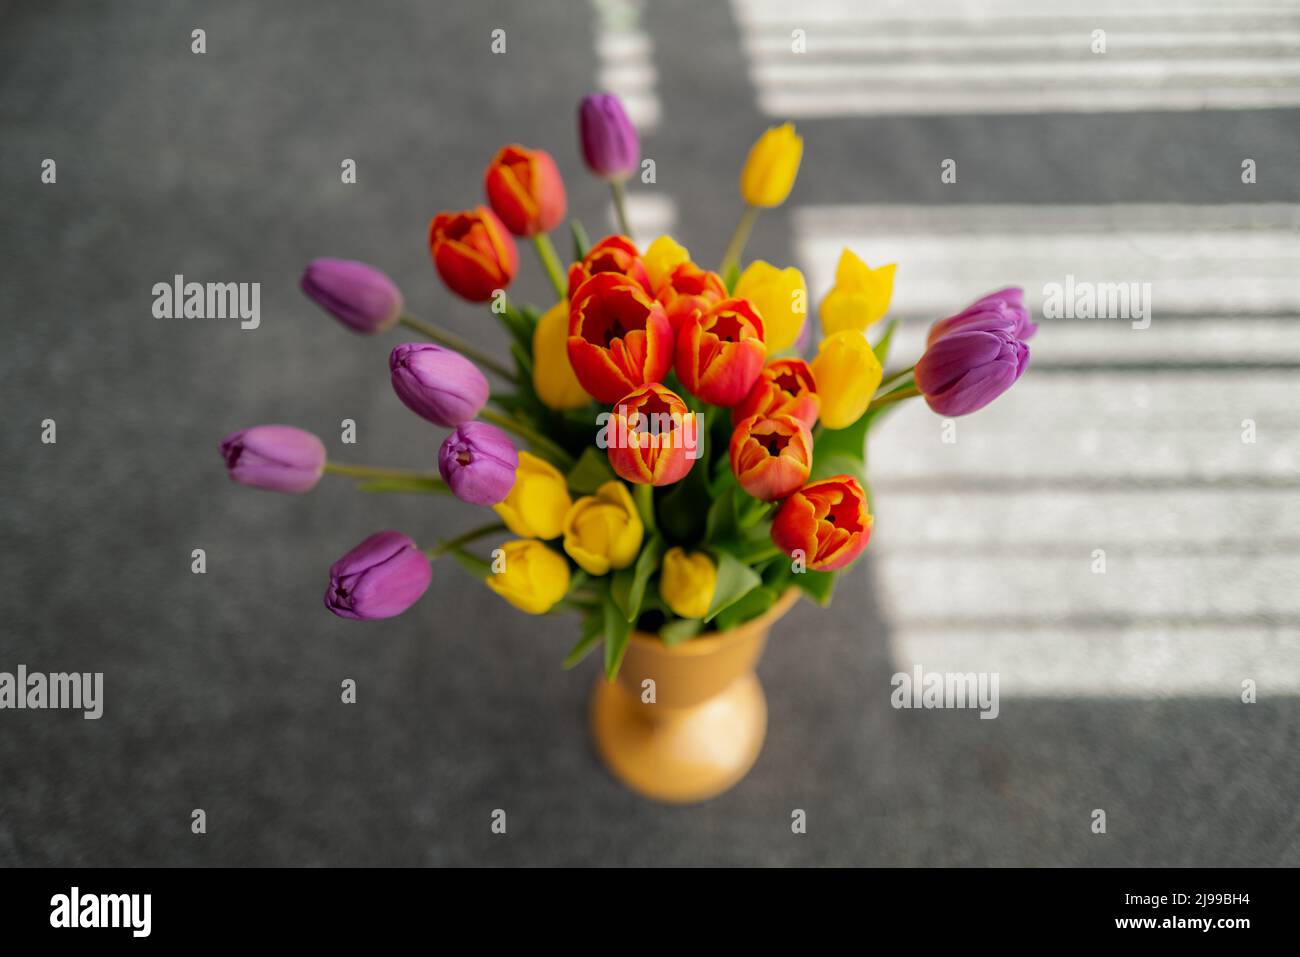 Foyer peu profond sur une fleur de tulipe rouge dans un vase de tulipes rouges, jaunes et violettes. Il y a l'ombre des stores derrière le bouquet Banque D'Images